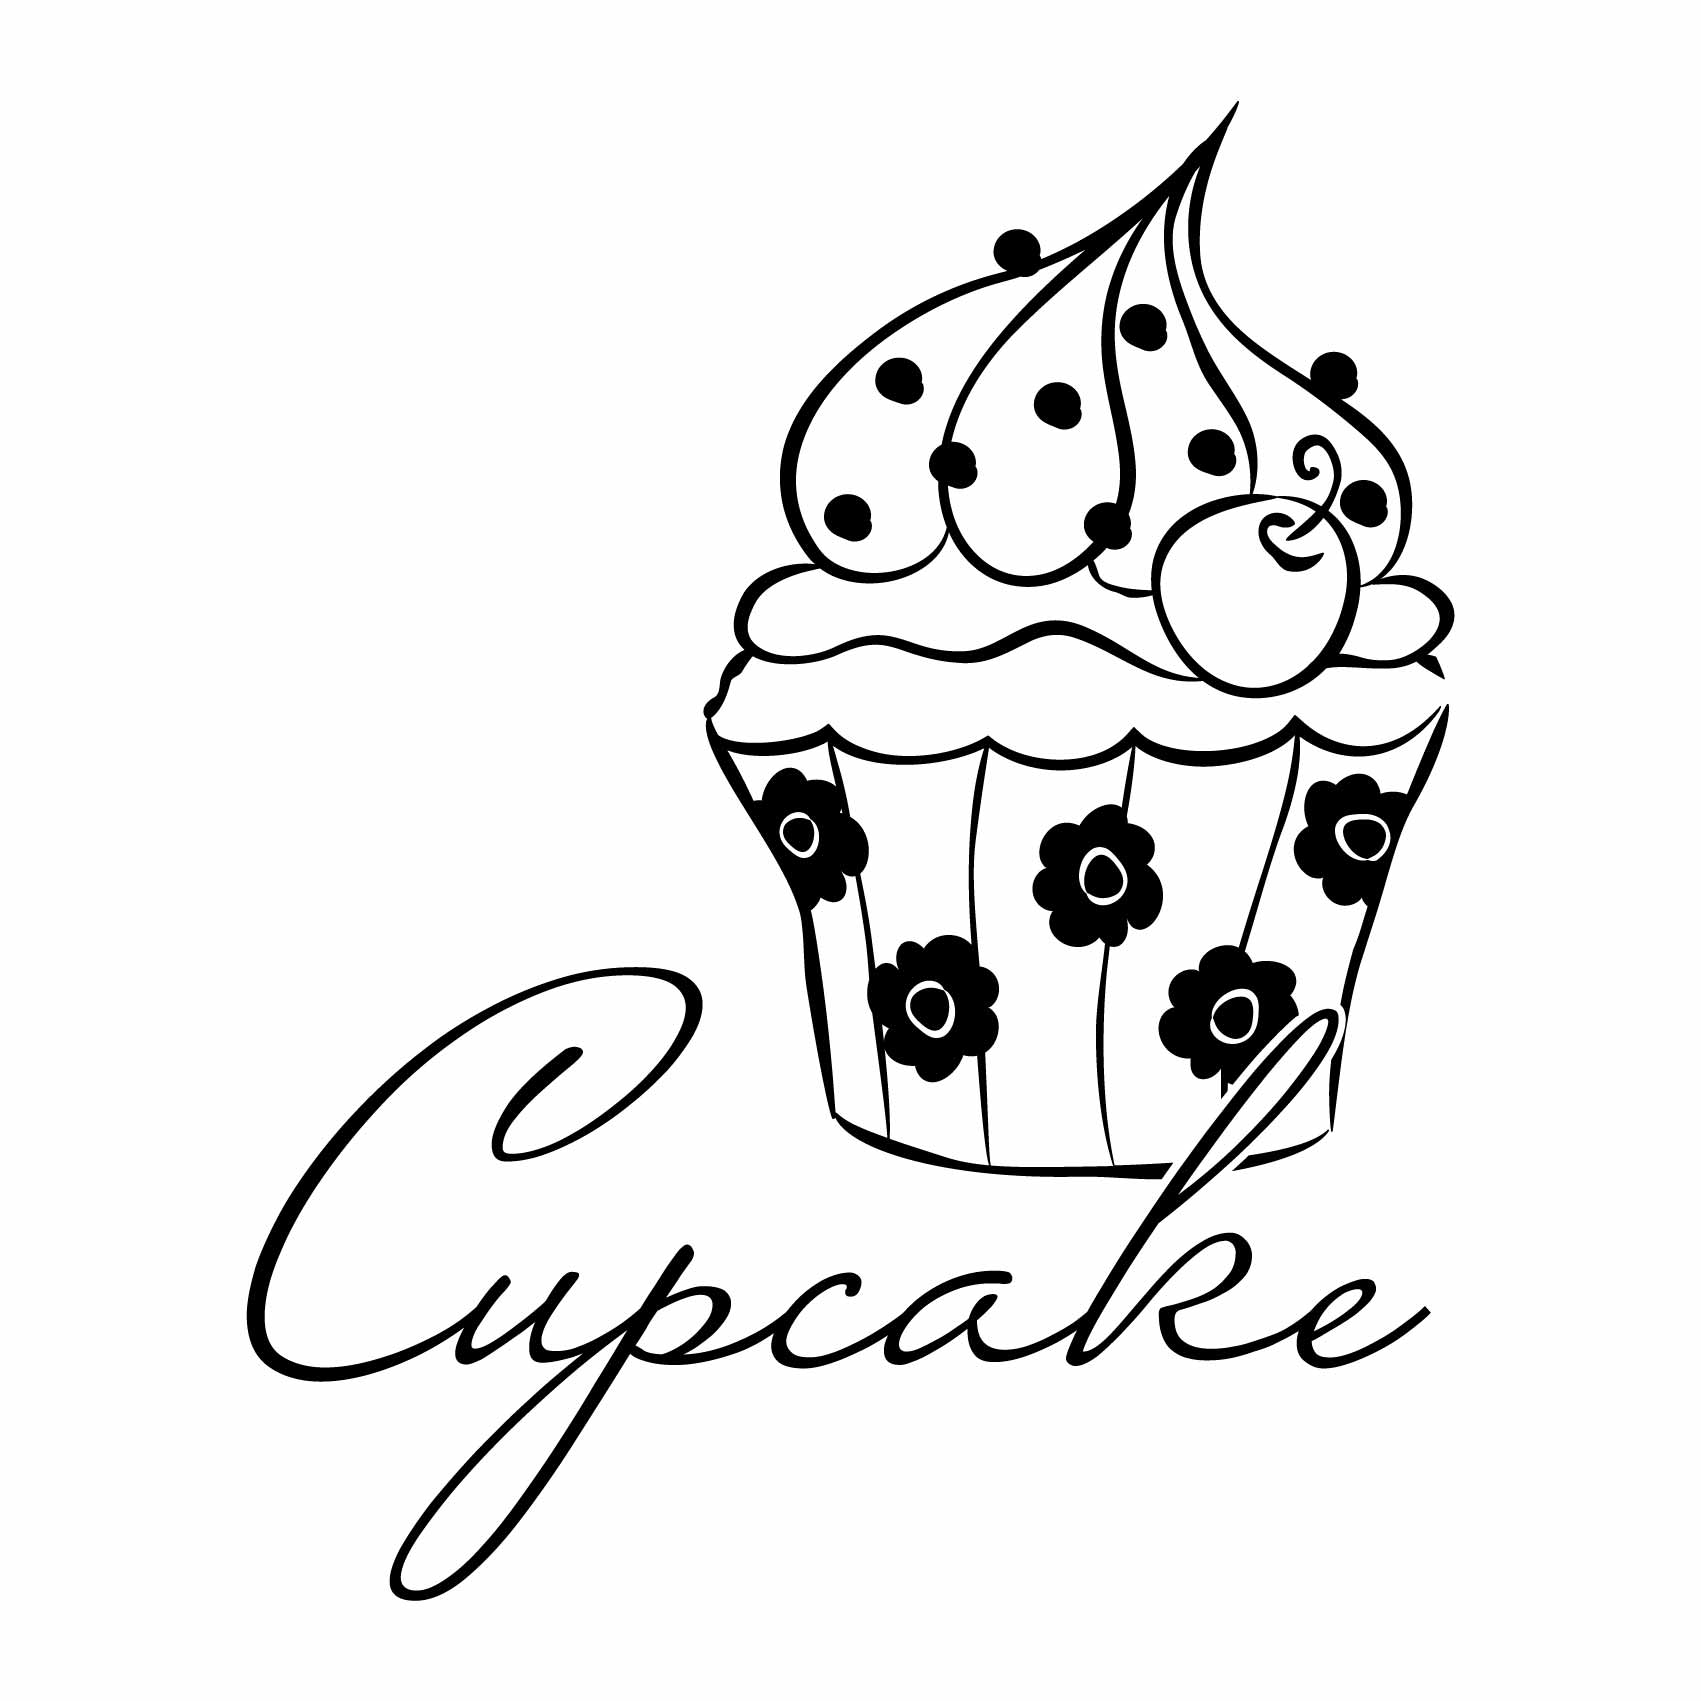 stickers-cupcake-rose-ref7cupcake-autocollant-muraux-cuisine-salle-a-manger-salon-sticker-mural-deco-gateau-cupcakes-gateaux-(2)